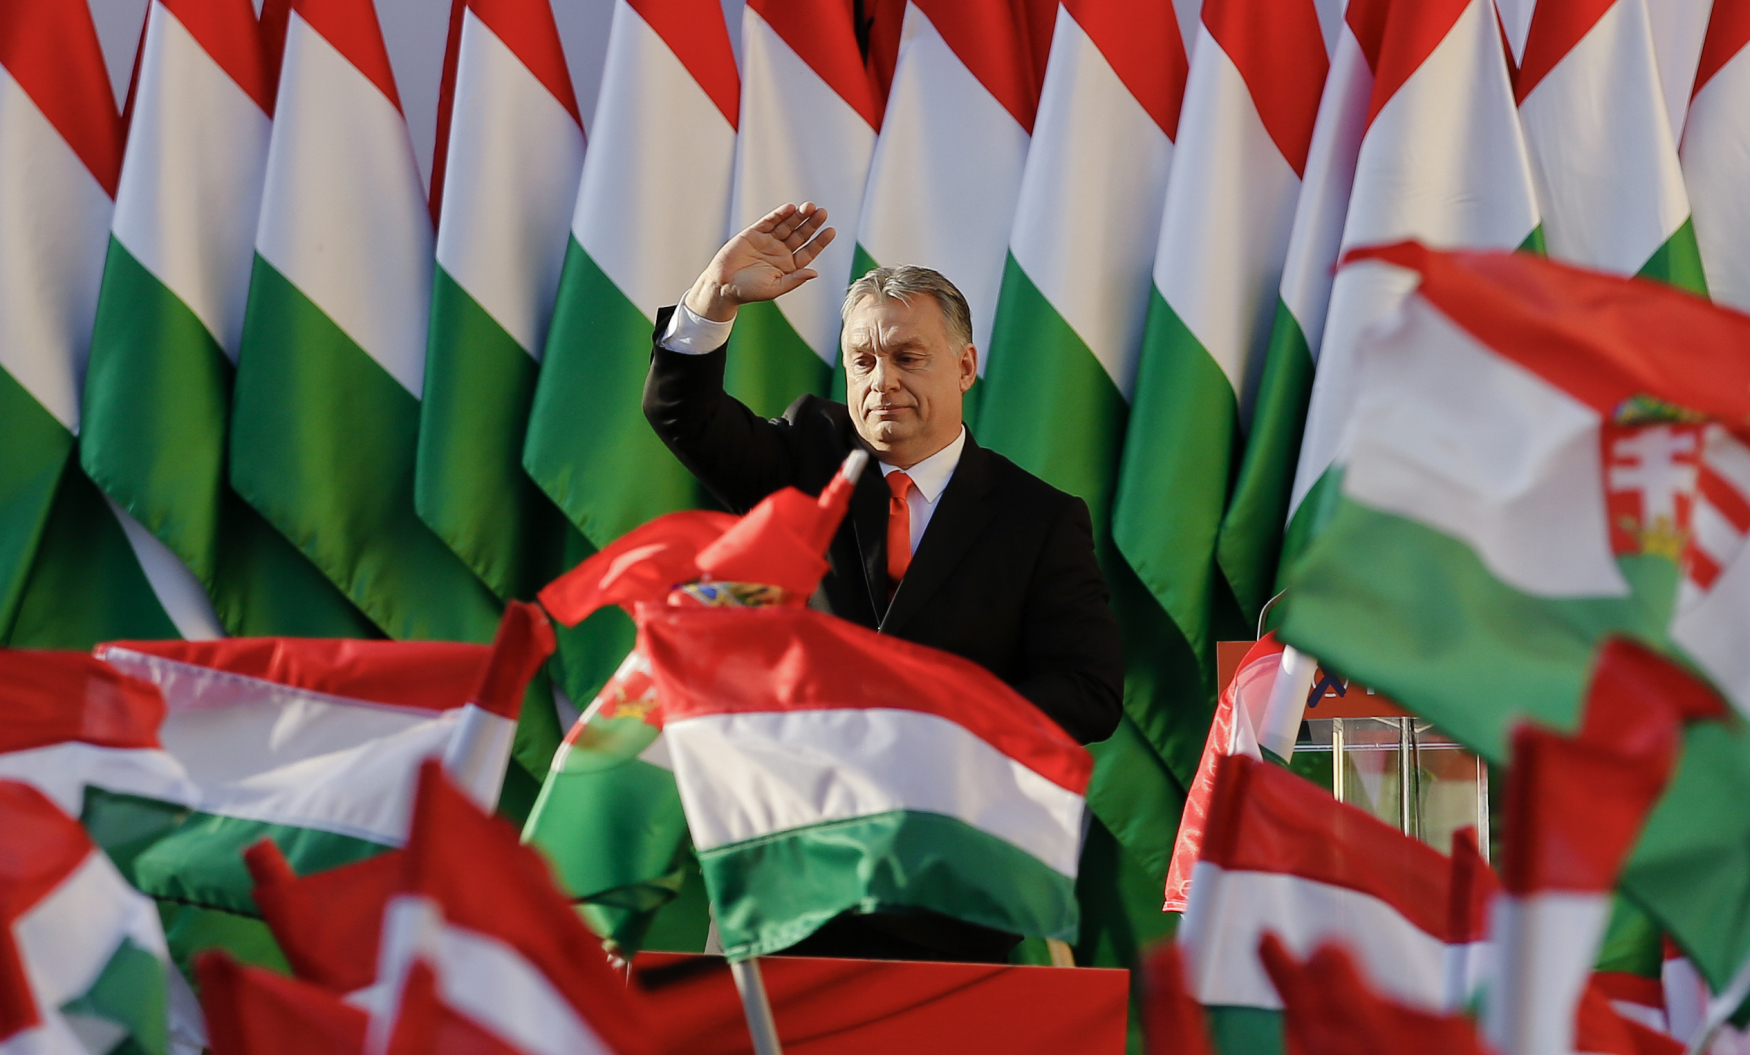 Jak Orbán změnil Maďarsko: Tradiční hodnoty, rostoucí ekonomika i podpora  oligarchů | Plus